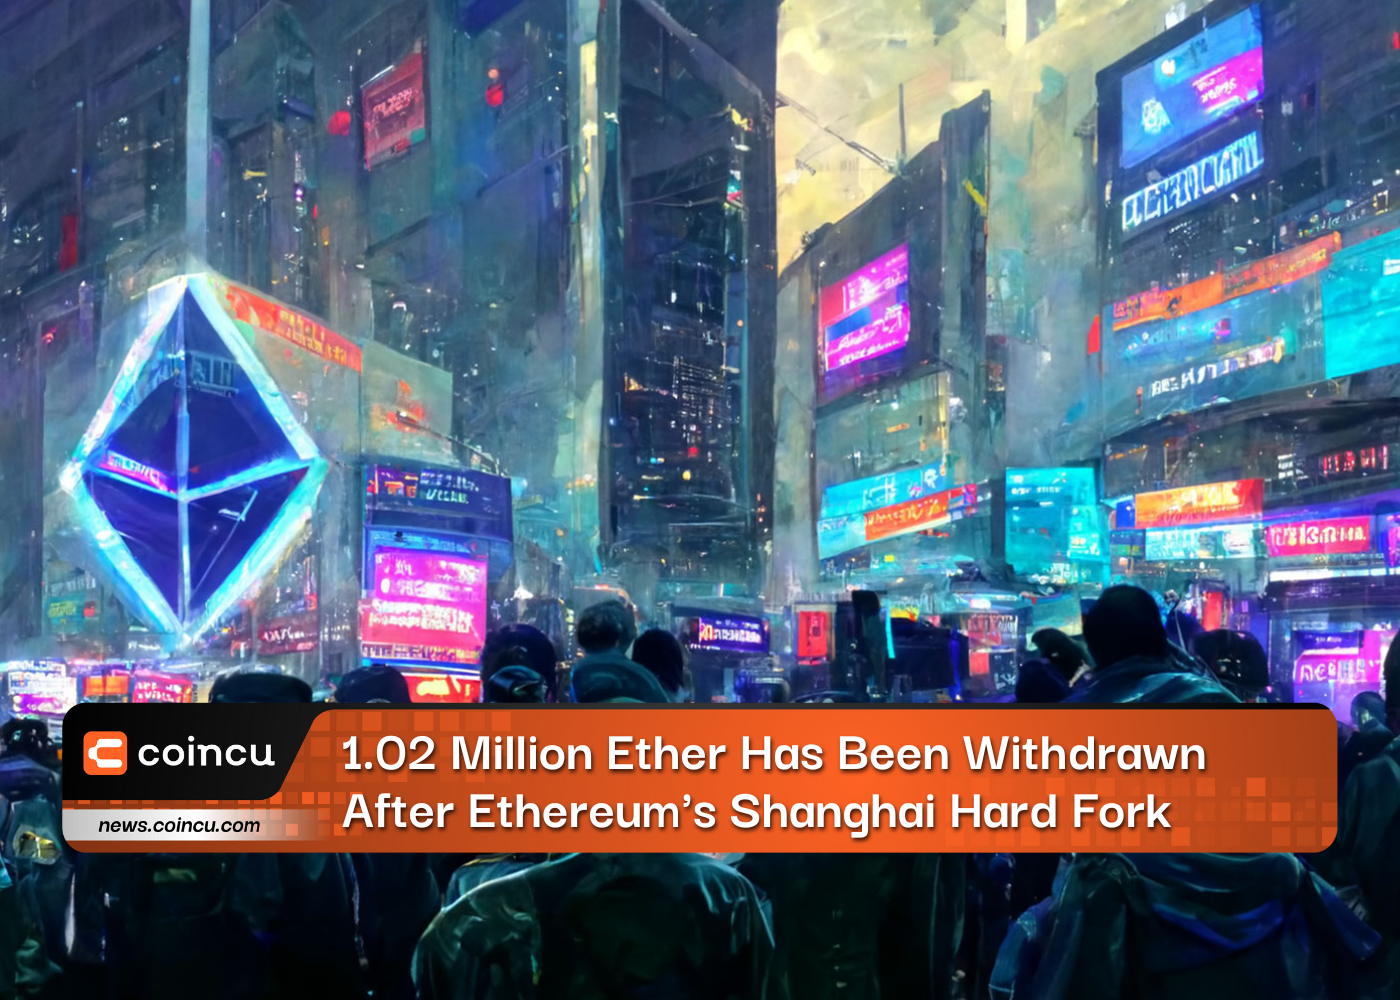 Nach dem Shanghai Hard Fork von Ethereum wurden 1.02 Millionen Ether abgezogen